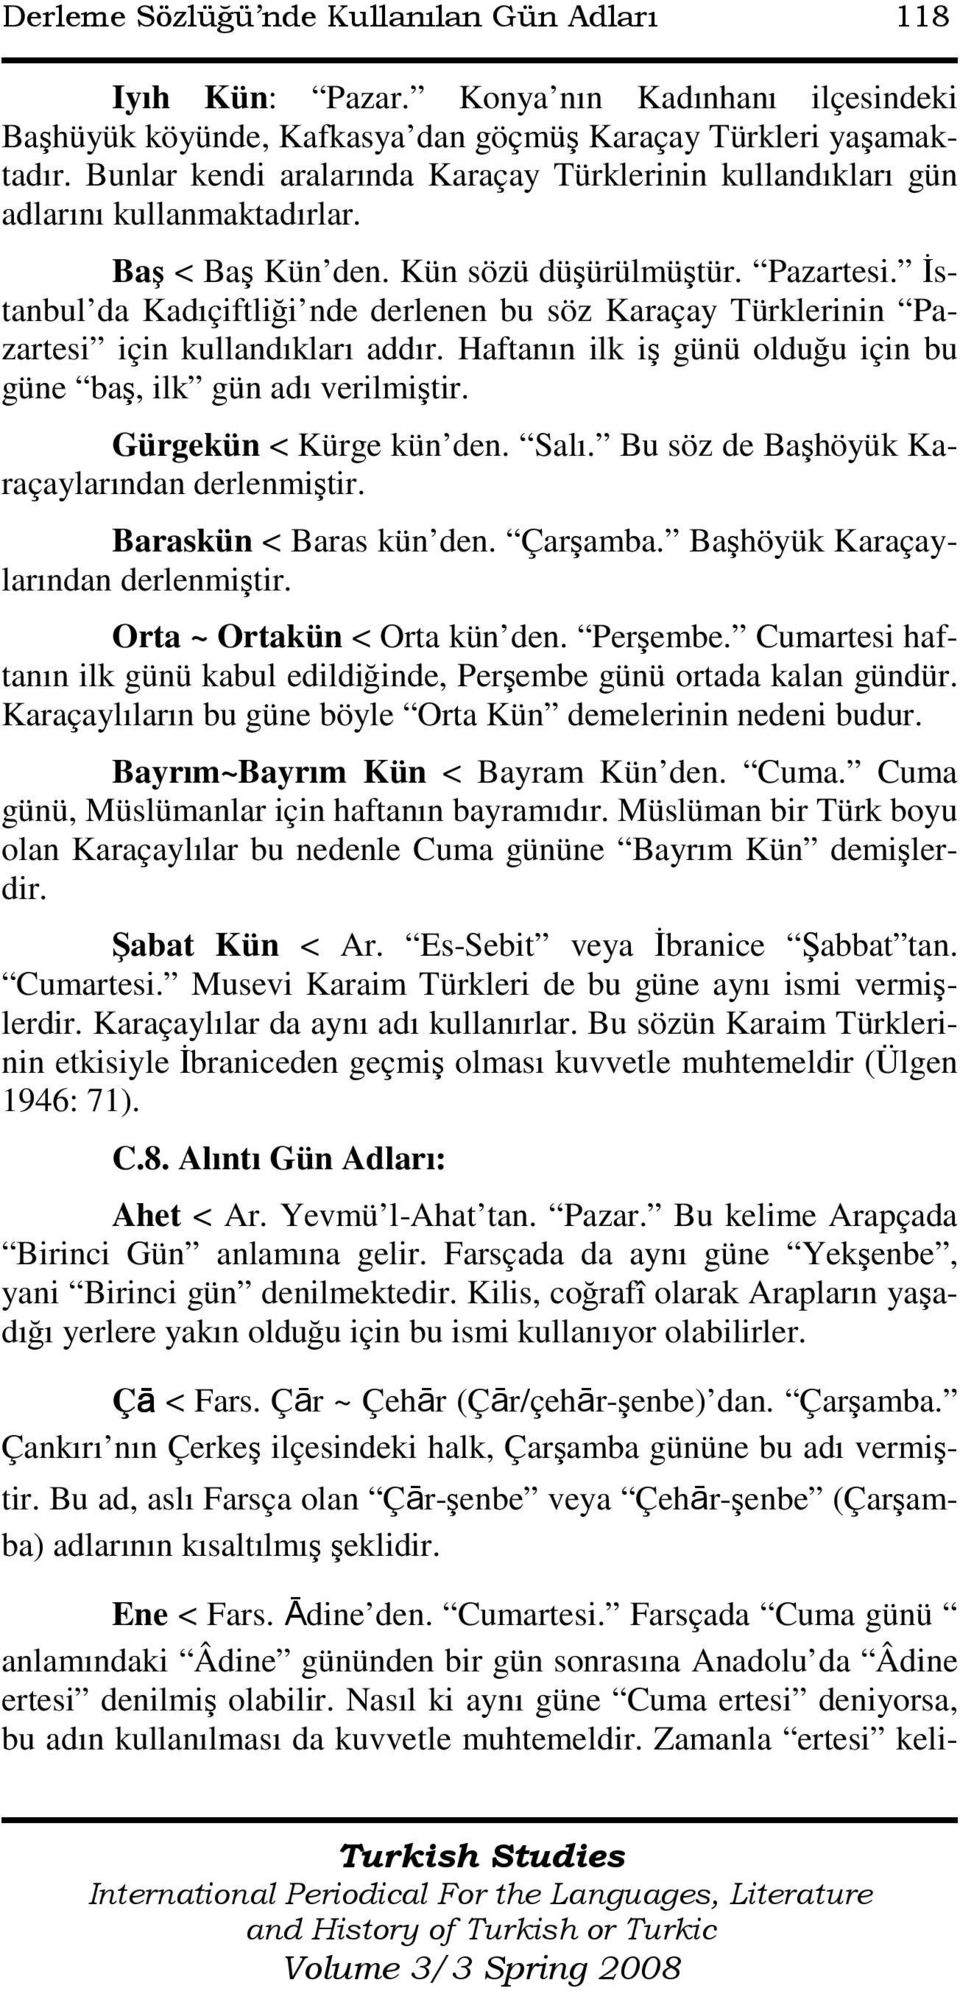 Đstanbul da Kadıçiftliği nde derlenen bu söz Karaçay Türklerinin Pazartesi için kullandıkları addır. Haftanın ilk iş günü olduğu için bu güne baş, ilk gün adı verilmiştir. Gürgekün < Kürge kün den.